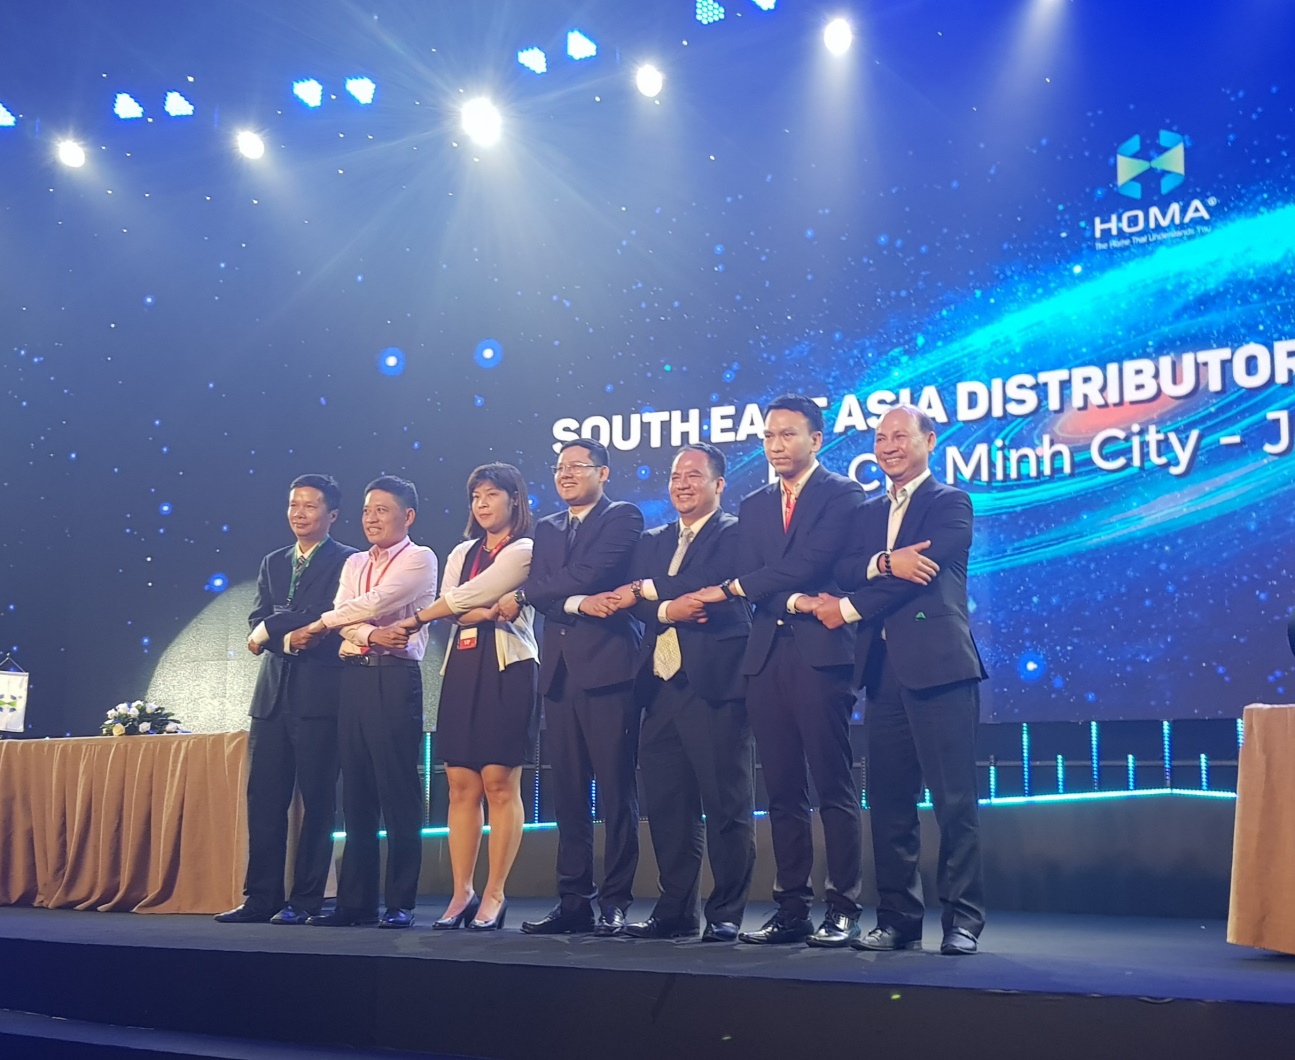 Ông Hoàng Minh Trí – Phó Giám đốc QTSC (ngoài cùng bên trái) ký kết hợp tác tới Homa phân phối sản phẩm tại khu vực Đông Nam Á